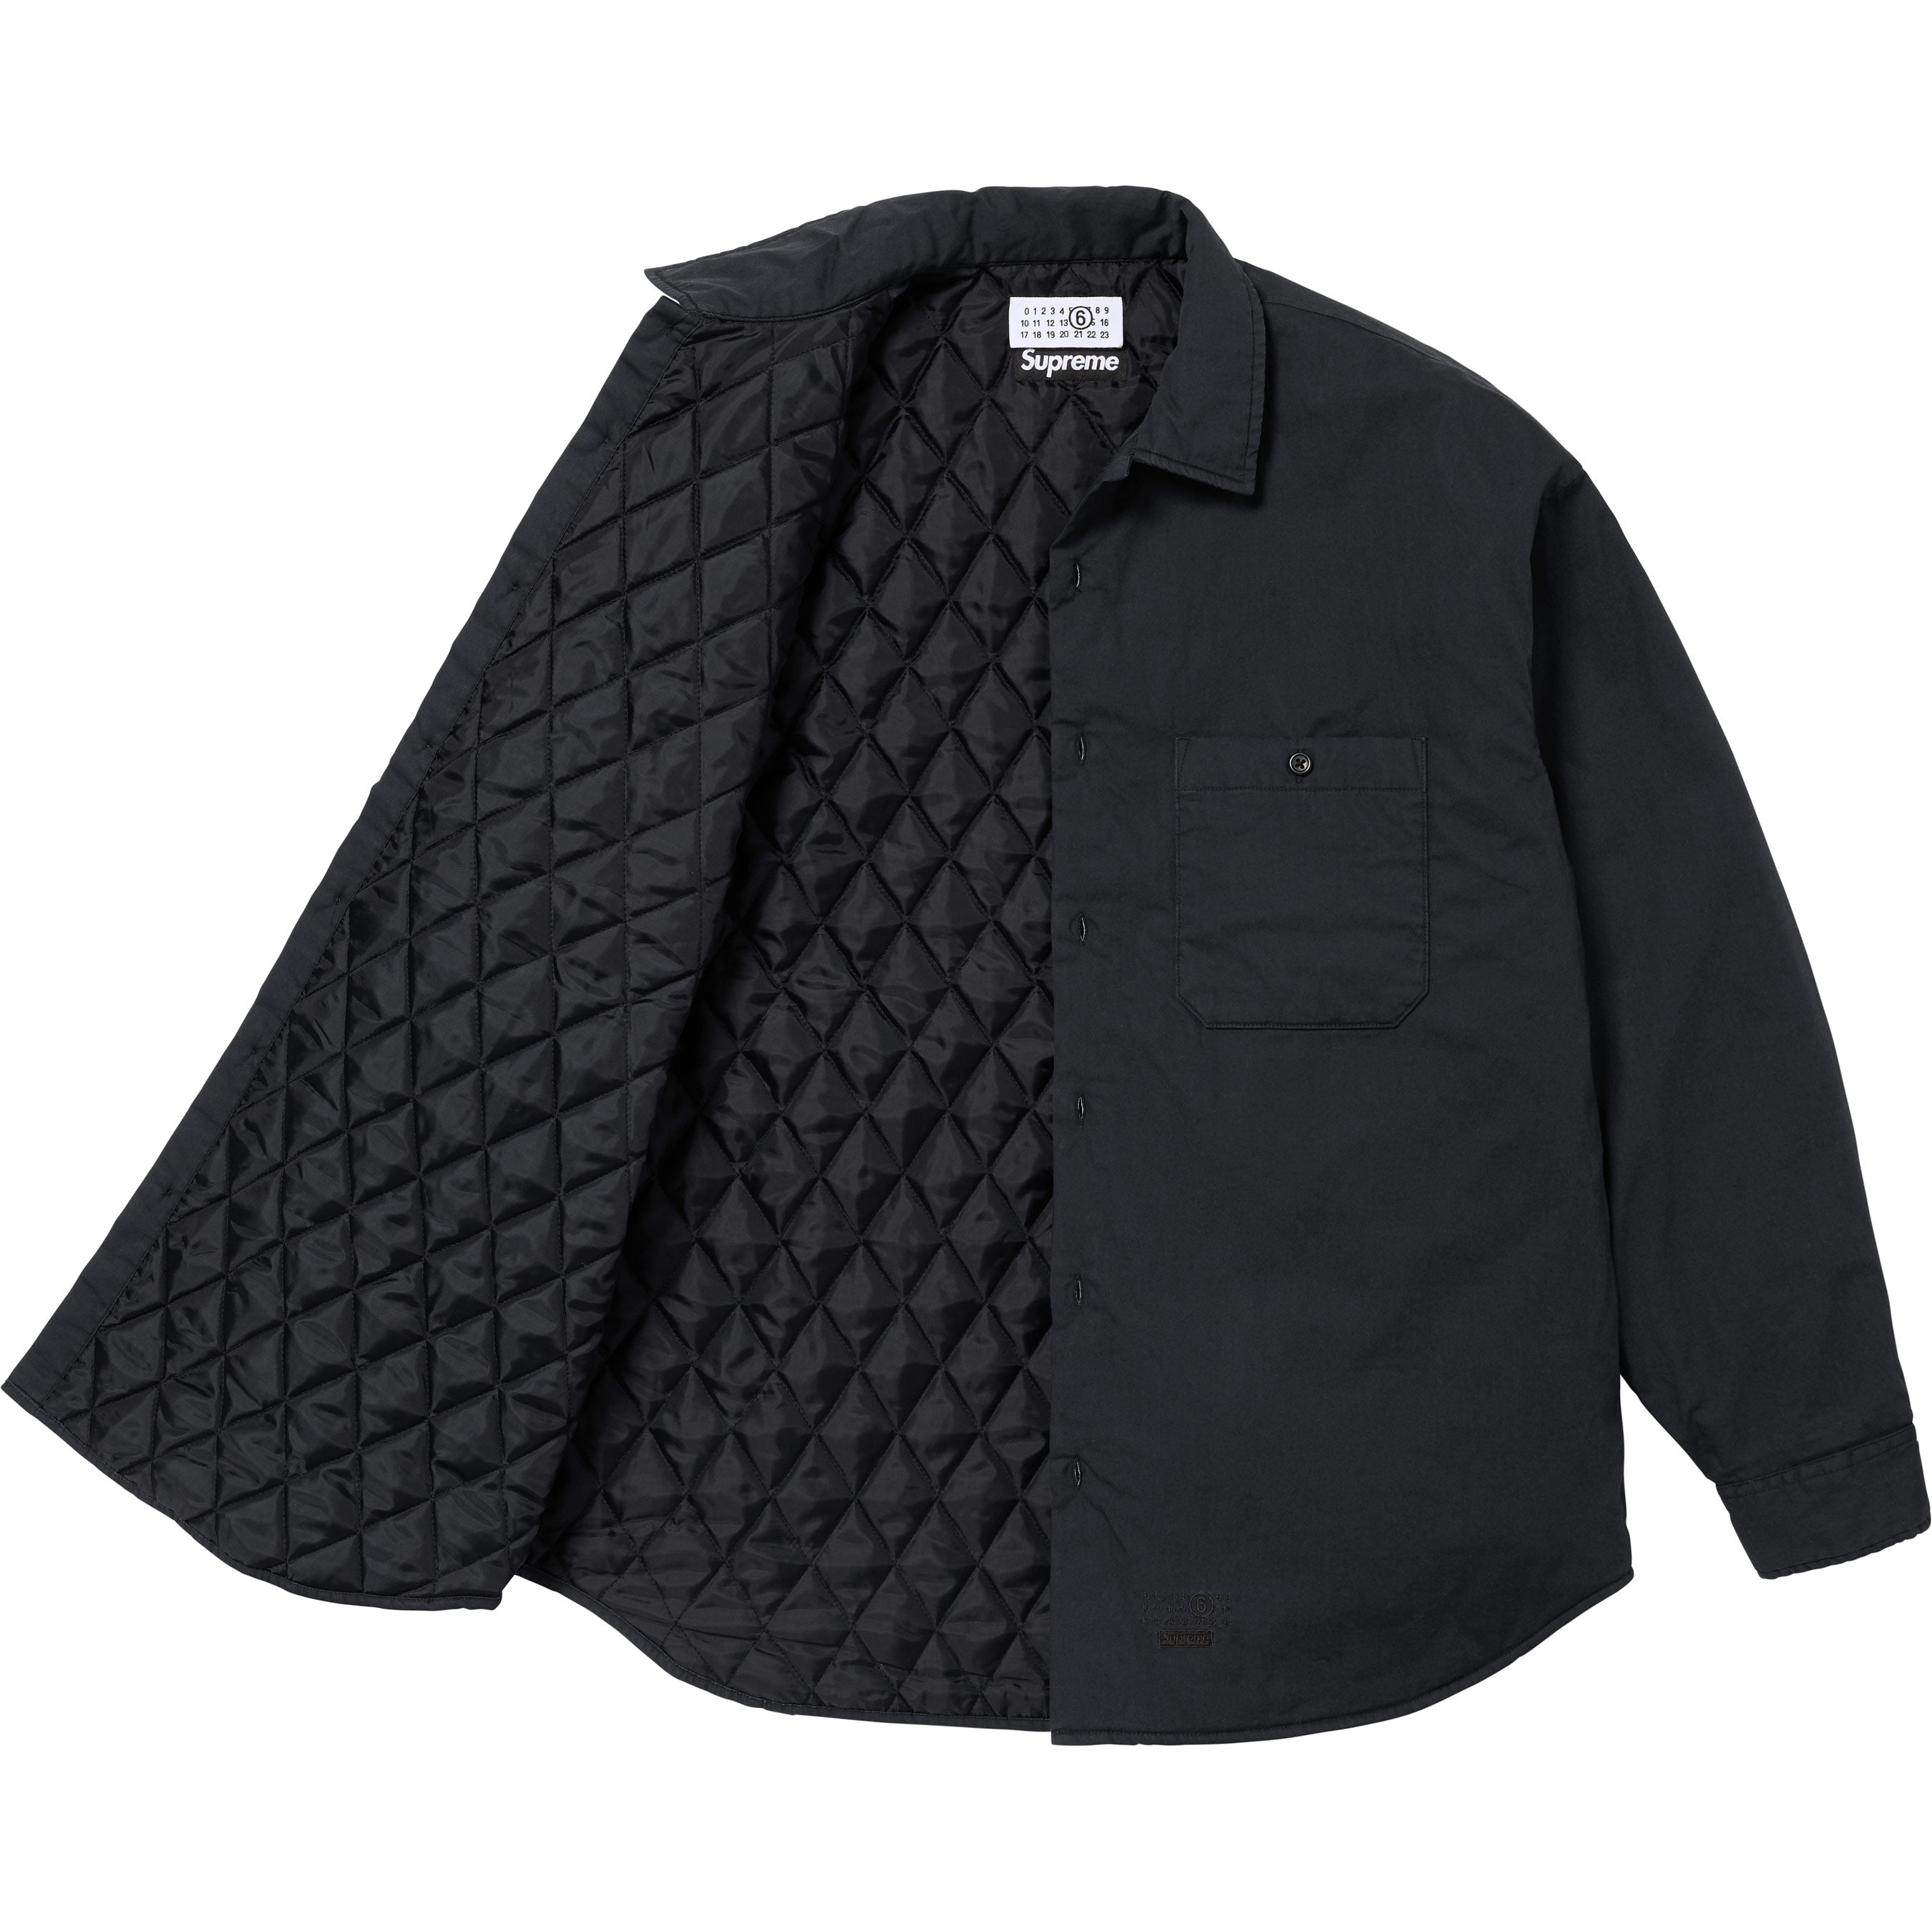 18,860円Supreme MM6 Margiela Padded Shirt Black